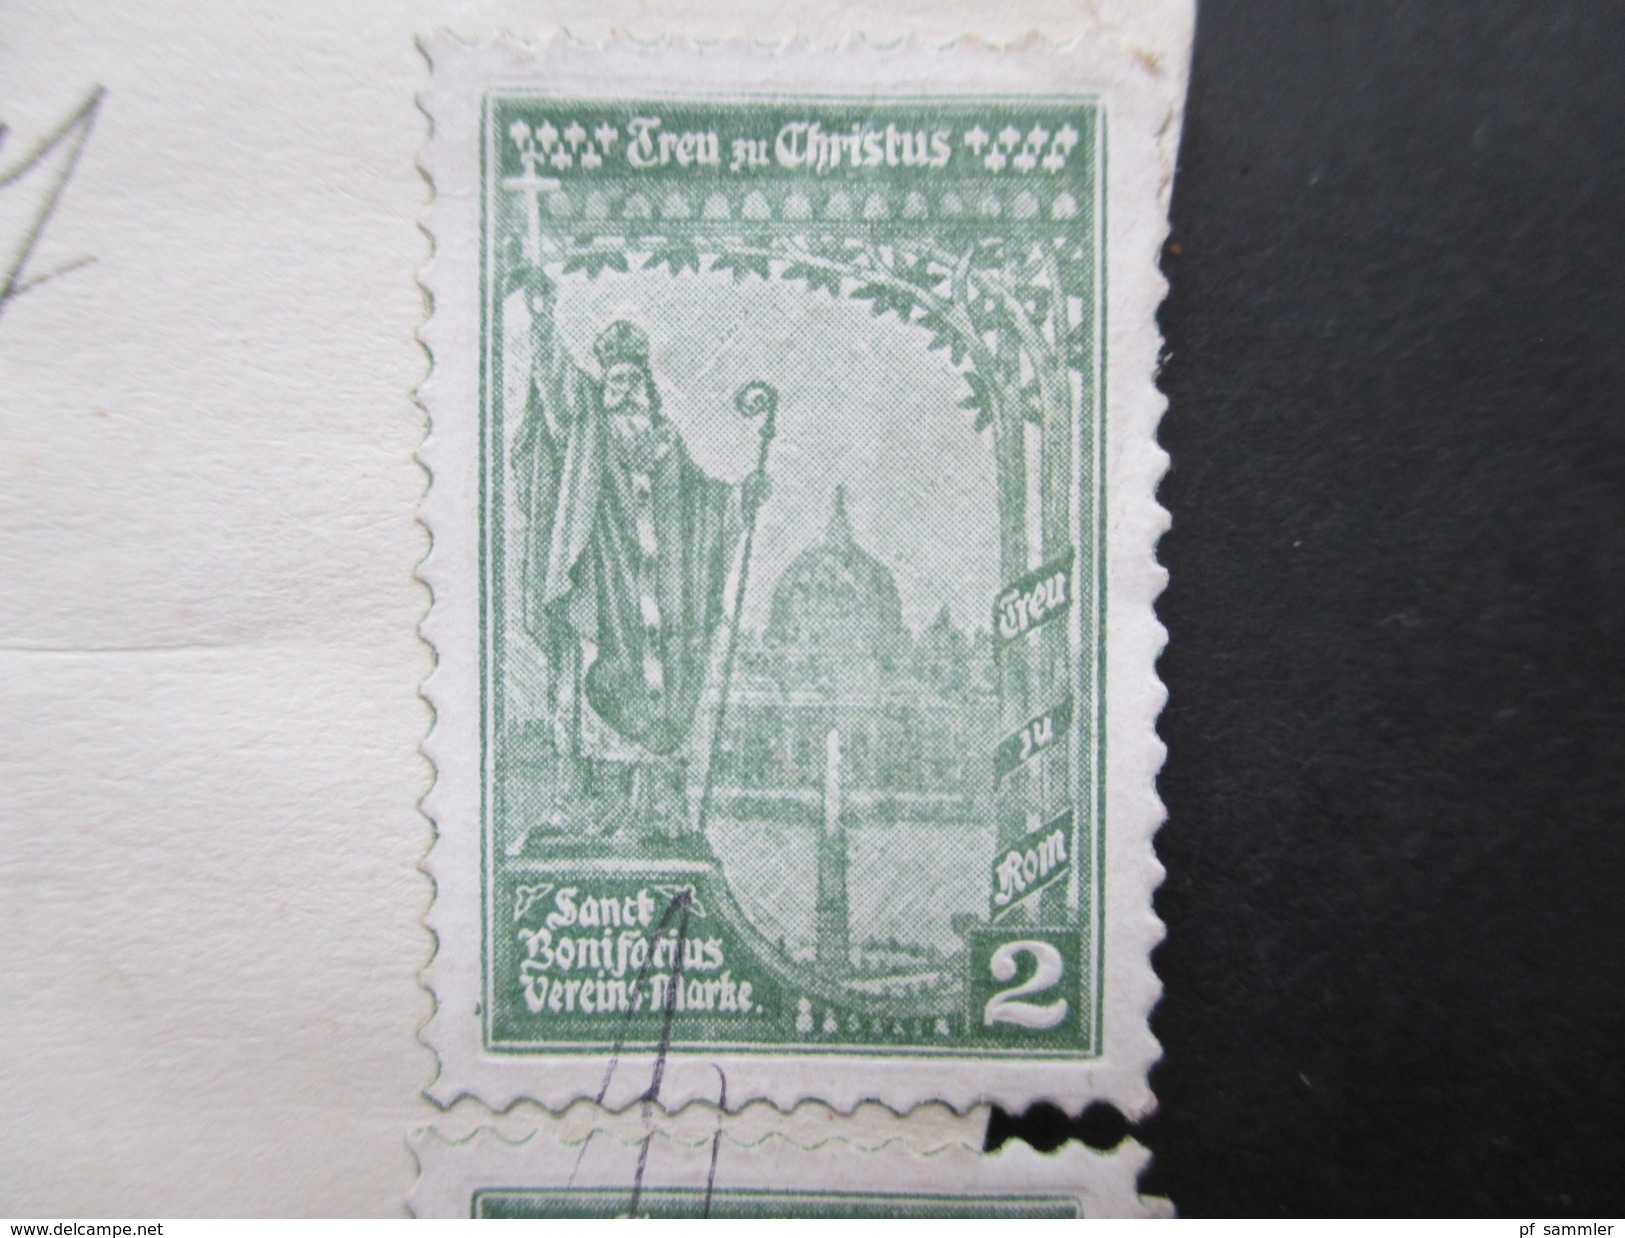 CSSR / Prag 1927 Briefstück Mit 4 Vignetten Treu Zu Christus Sanct Bonifatius Vereins Marke + 6er Streifen Marken! - Christianity